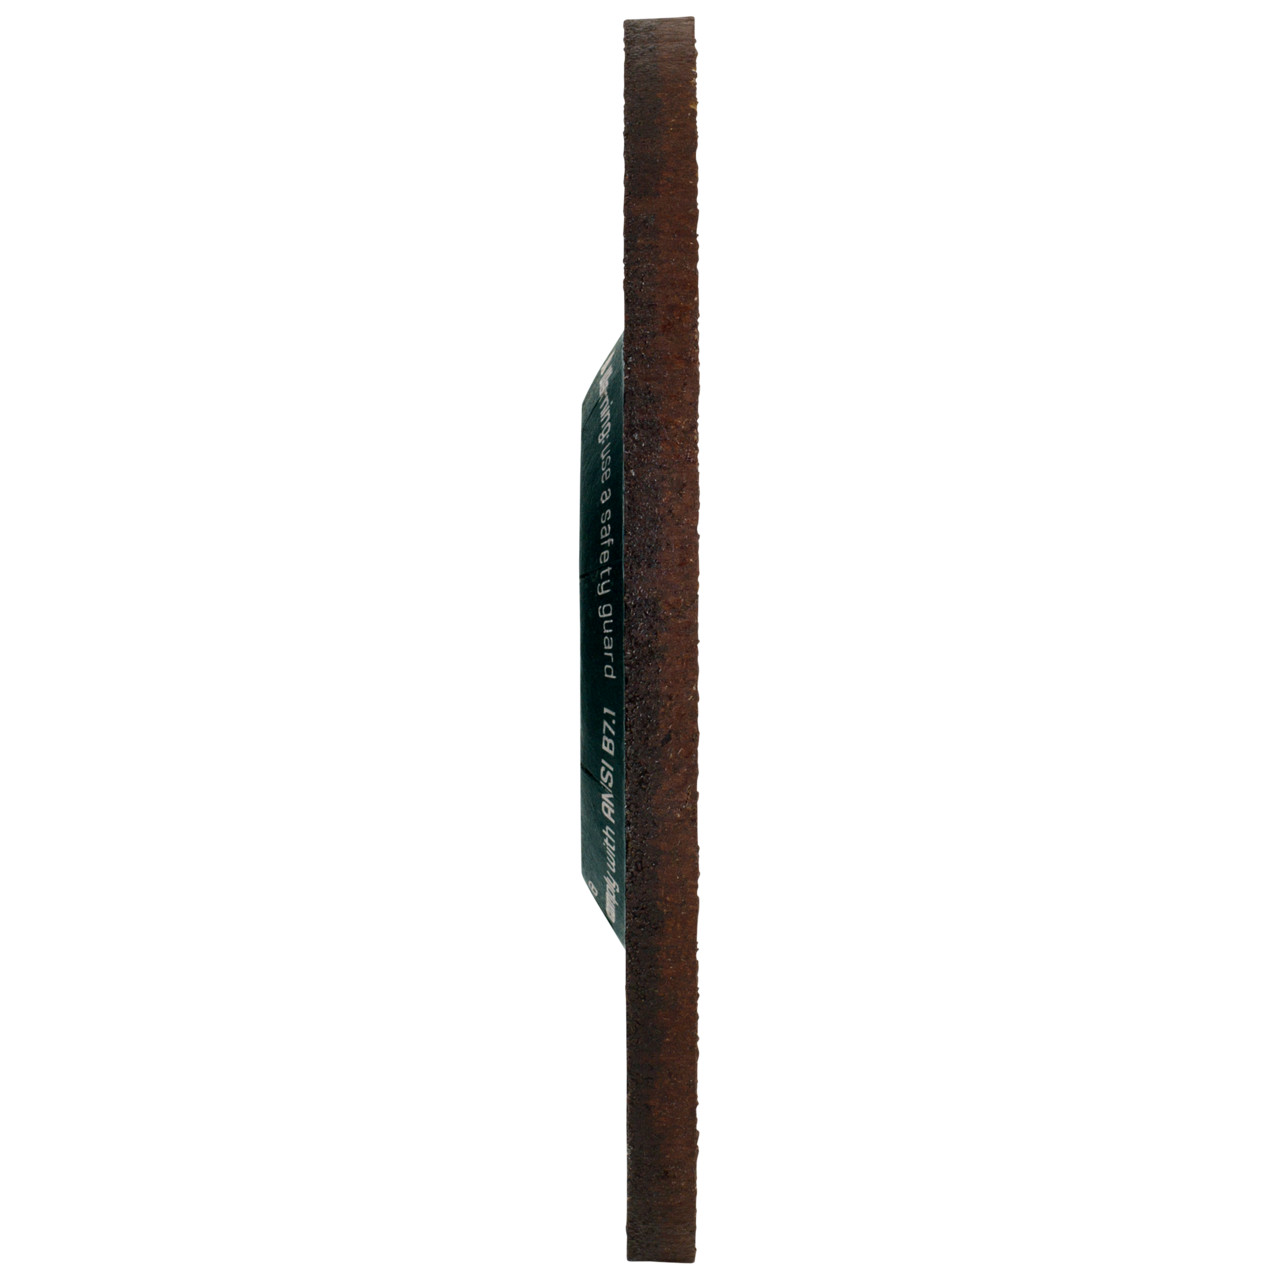 Tyrolit Karhennuslevy DxUxH 178x4x22.23 CERABOND X teräkselle ja ruostumattomalle teräkselle